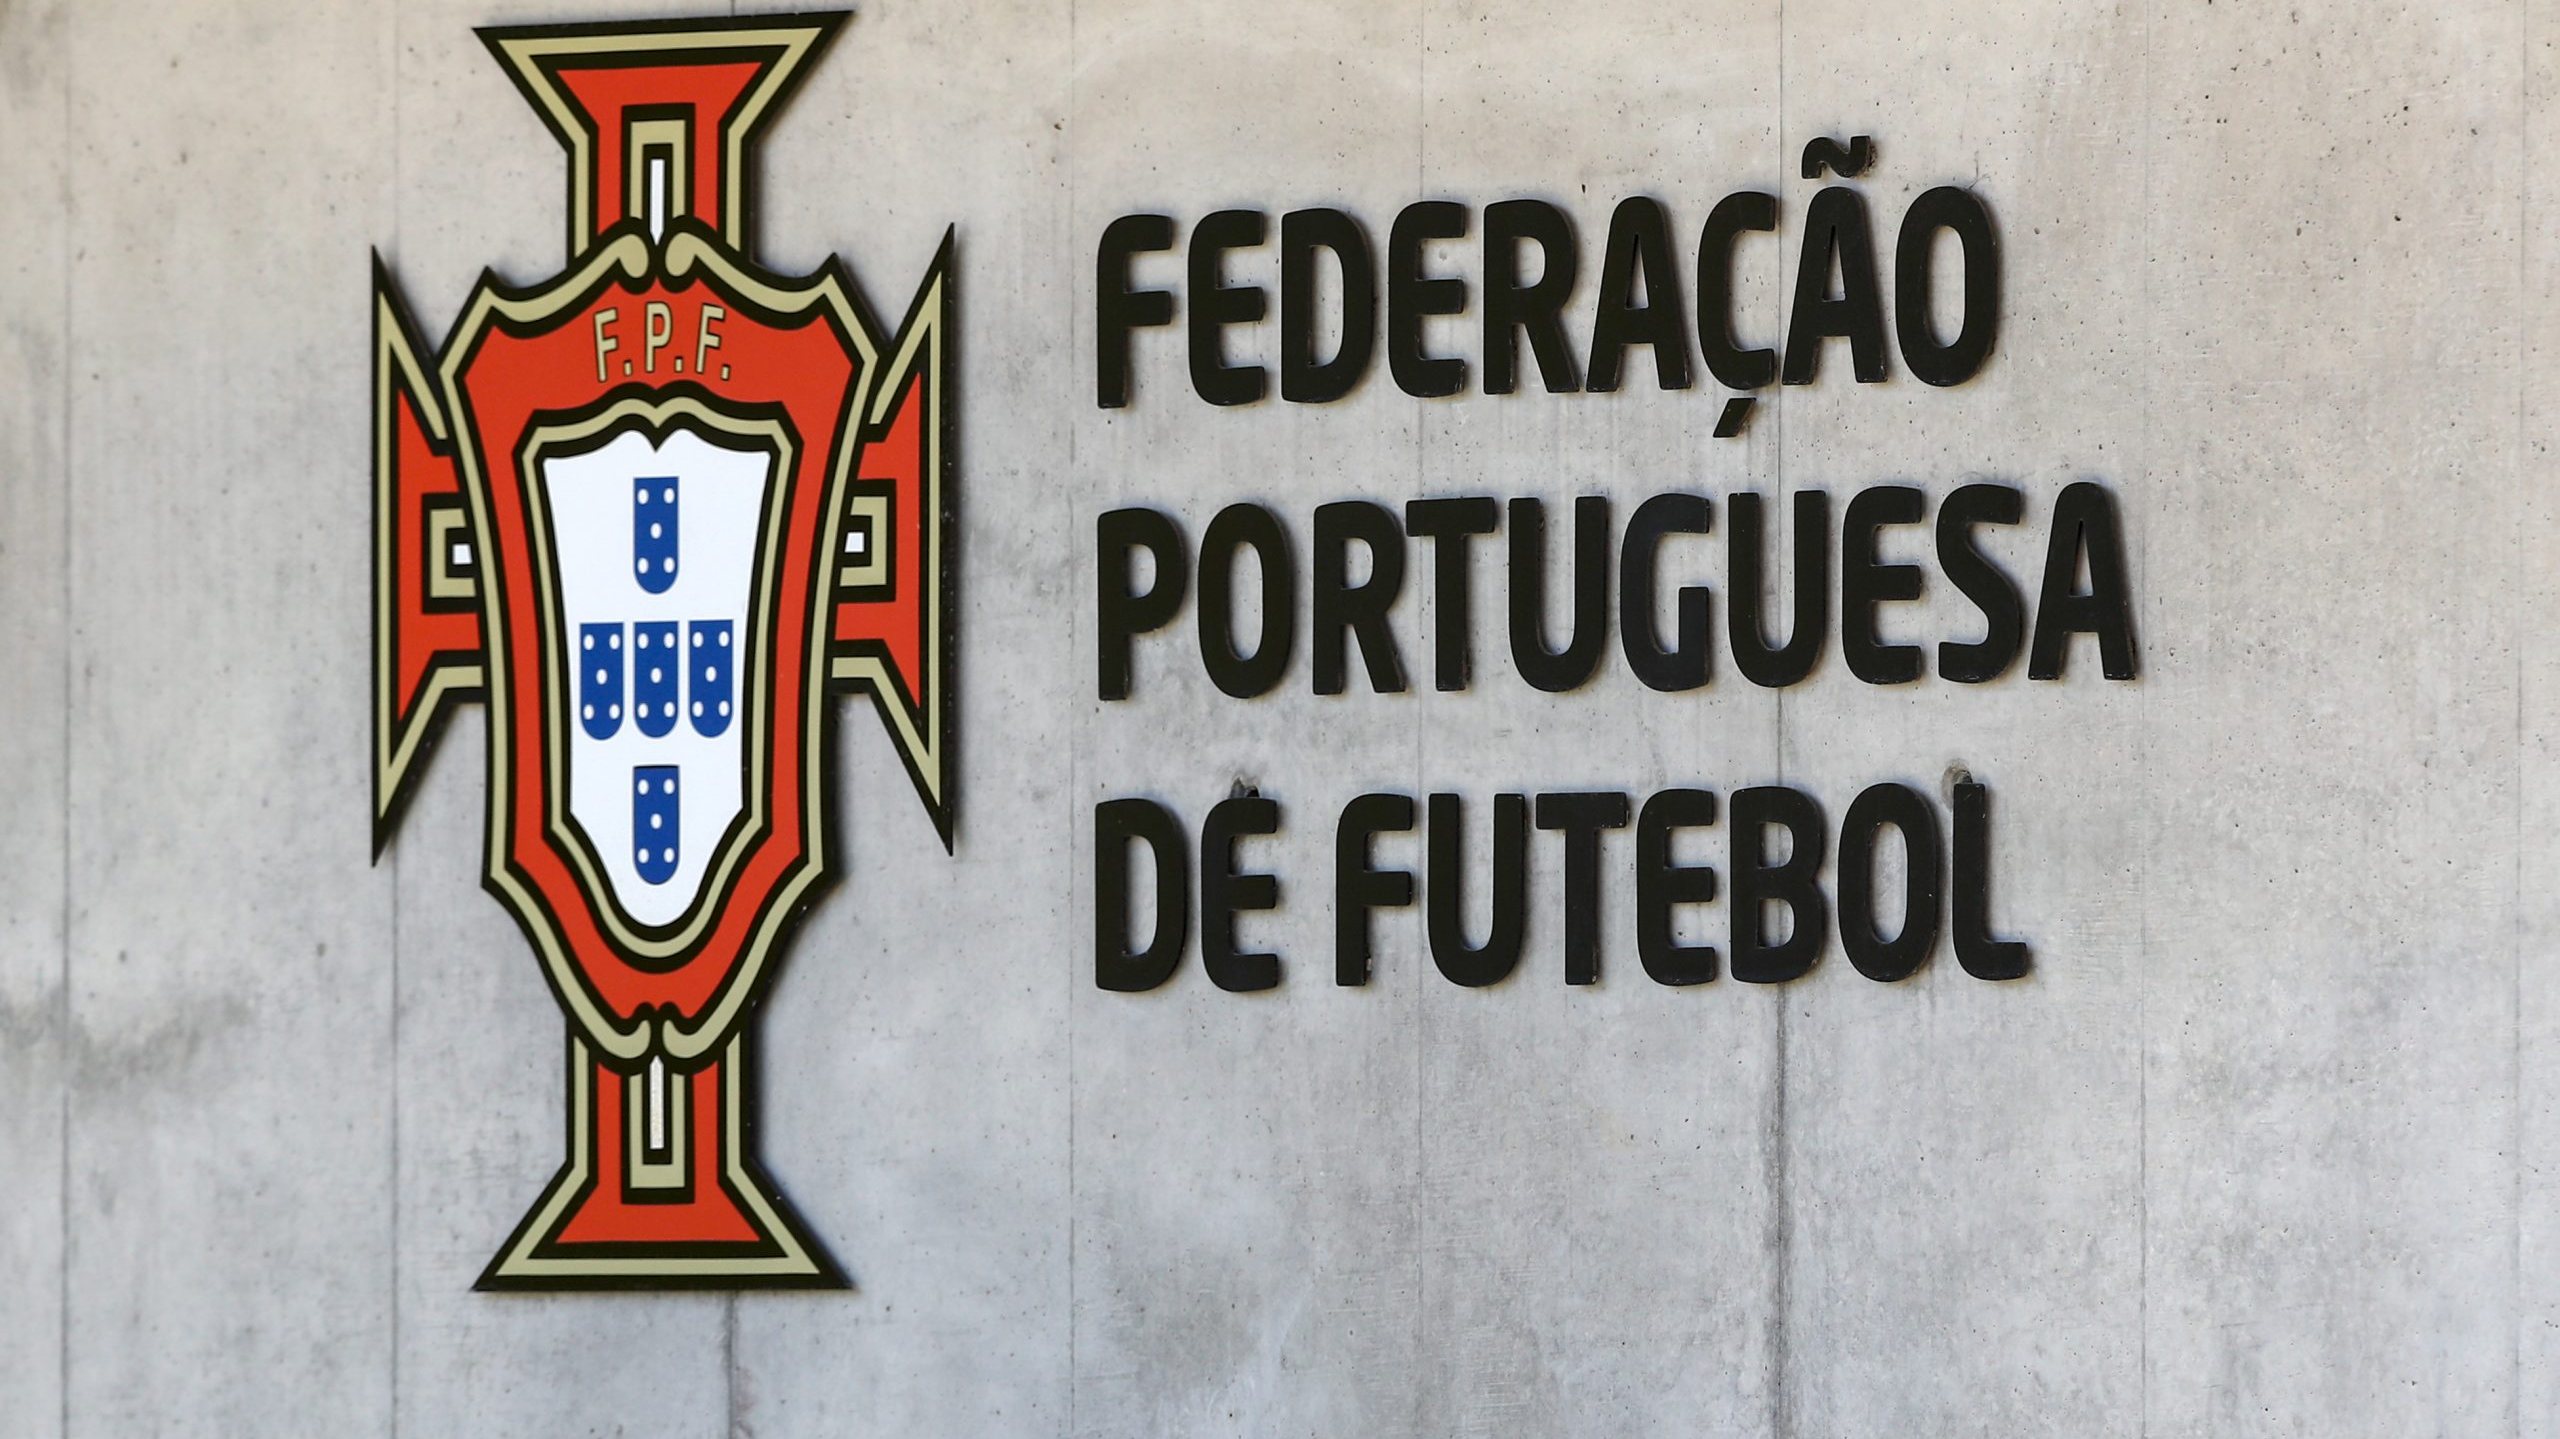 Logotipo da Federação Portuguesa de Futebol, Oeiras, 24 de junho de 2019. ANTÓNIO COTRIM/LUSA